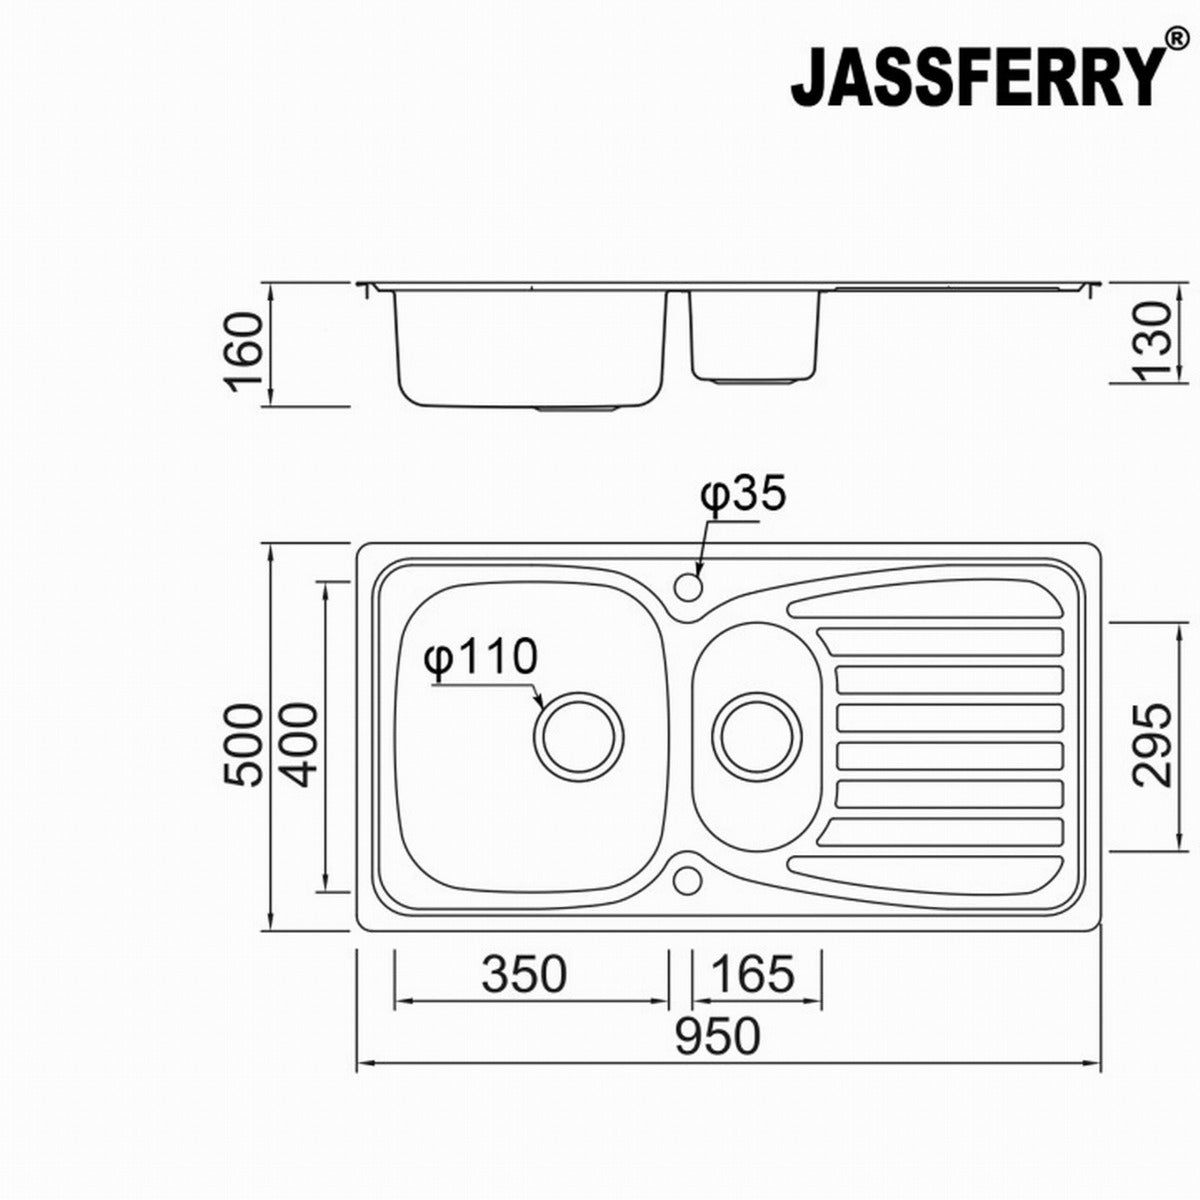 JassferryJASSFERRY Inset Stainless Steel Kitchen Sink One and Half Bowl Reversible DrainerKitchen Sinks